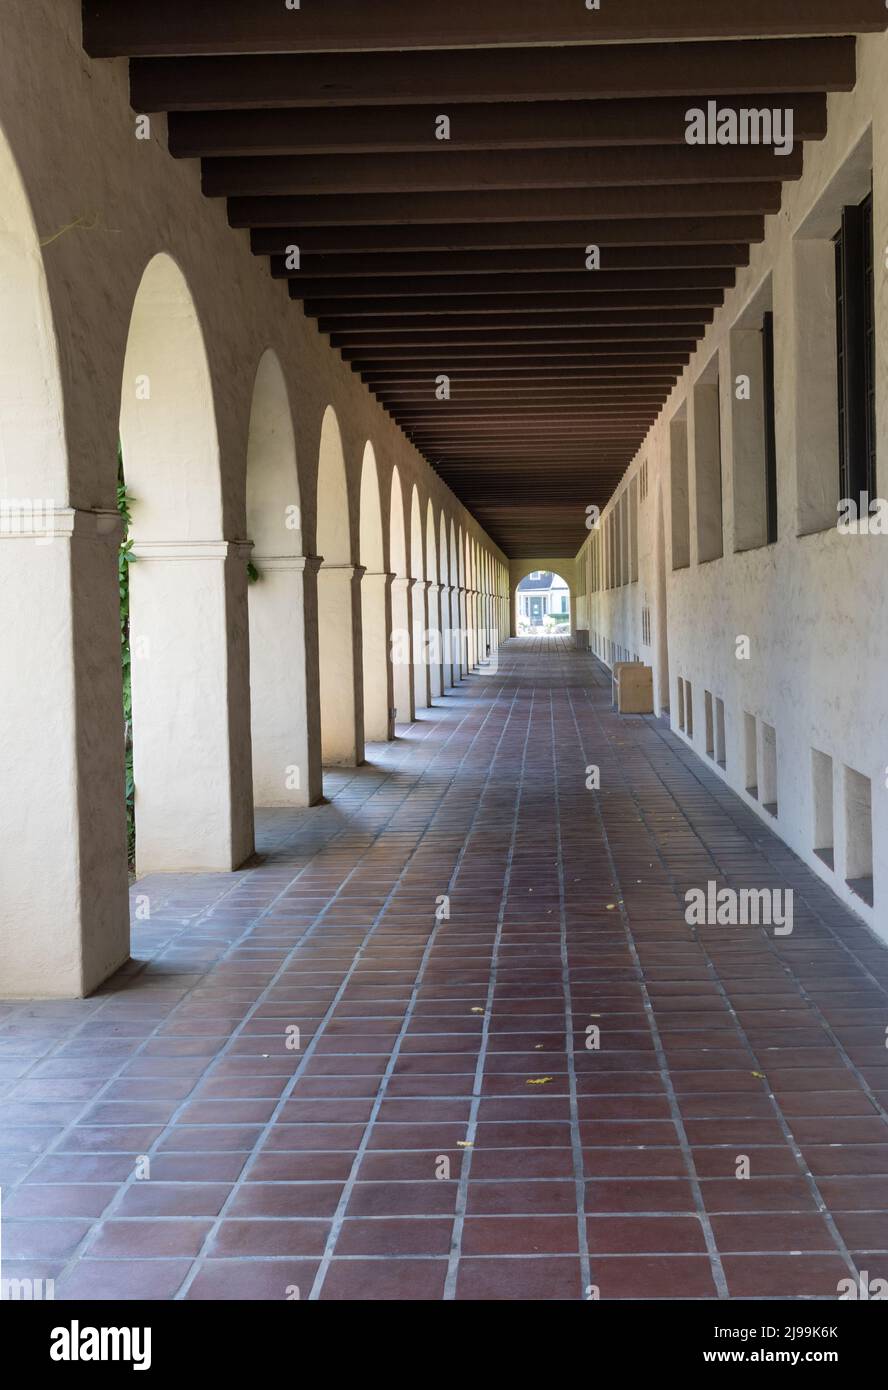 Exterior corridor on the campus of Caltech Stock Photo